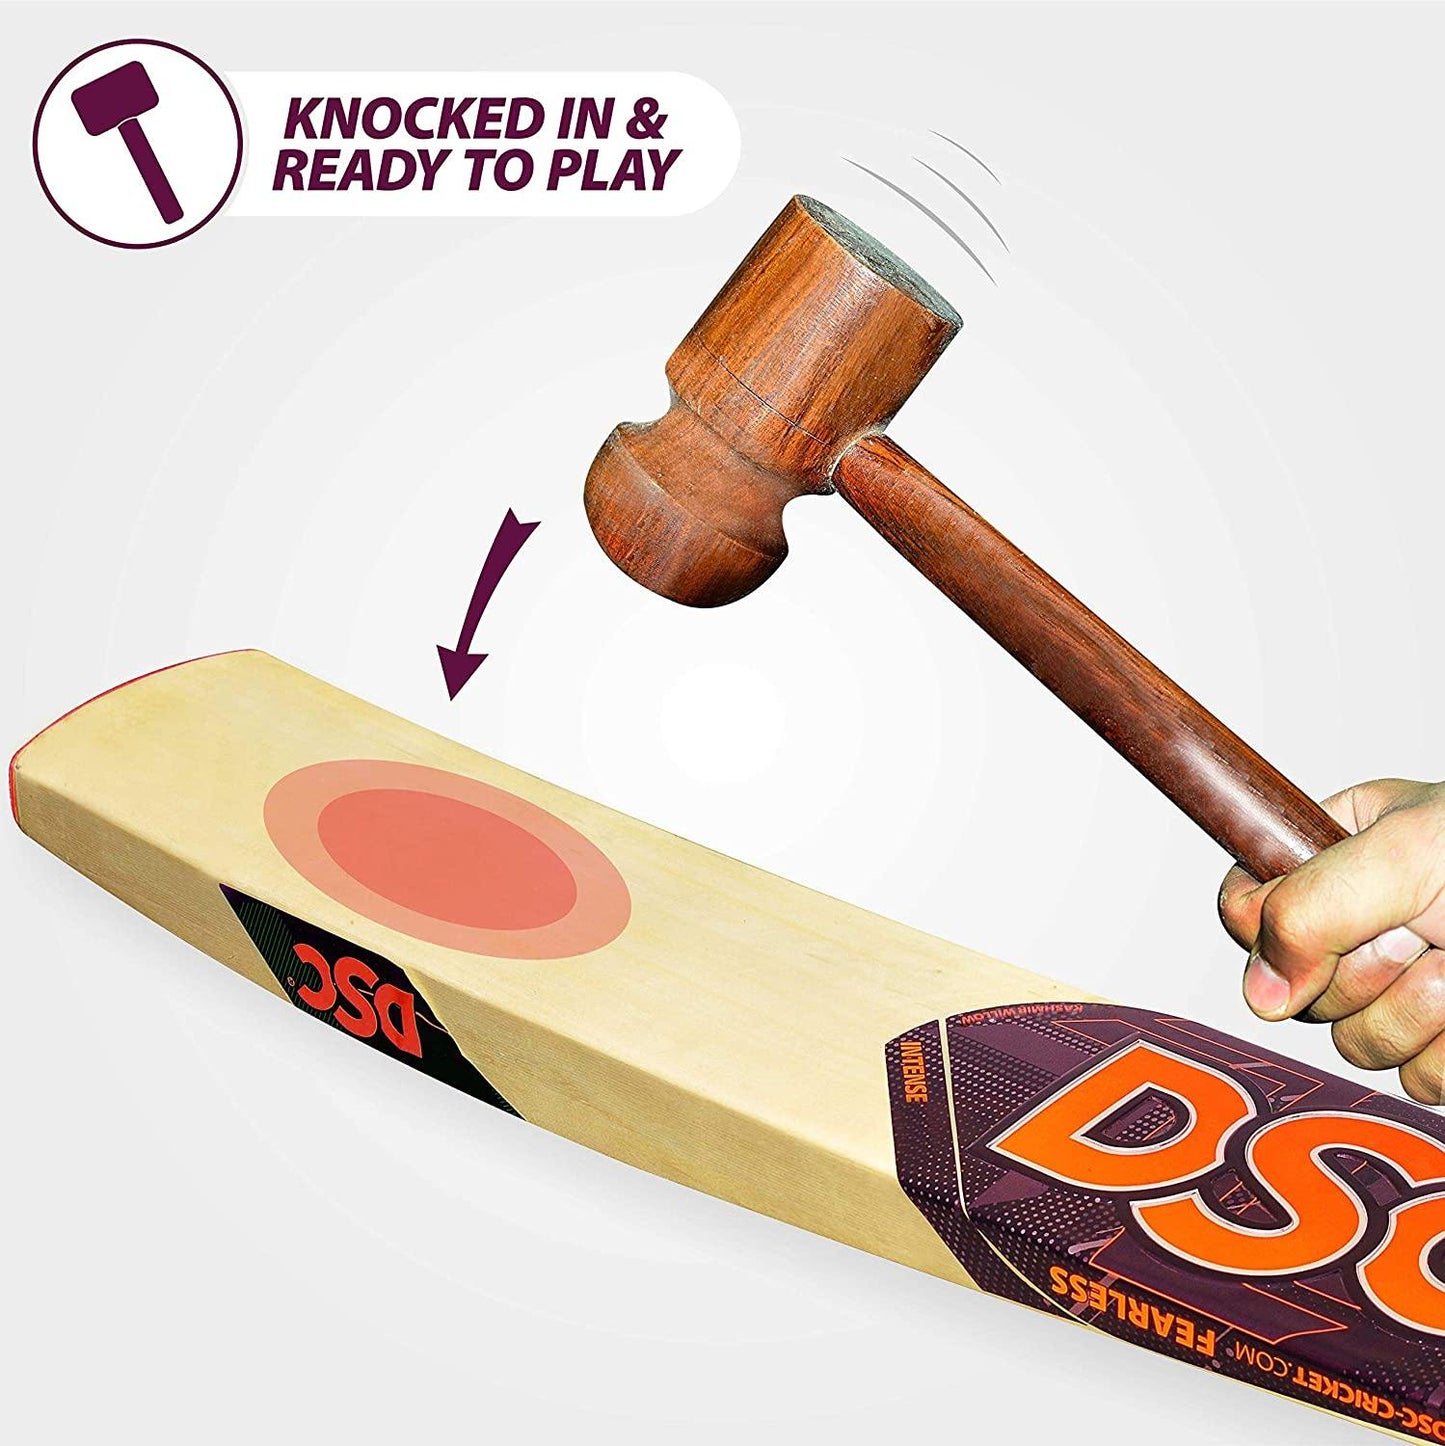 DSC Intense Zeal Kashmir Willow Cricket Bat - Best Price online Prokicksports.com